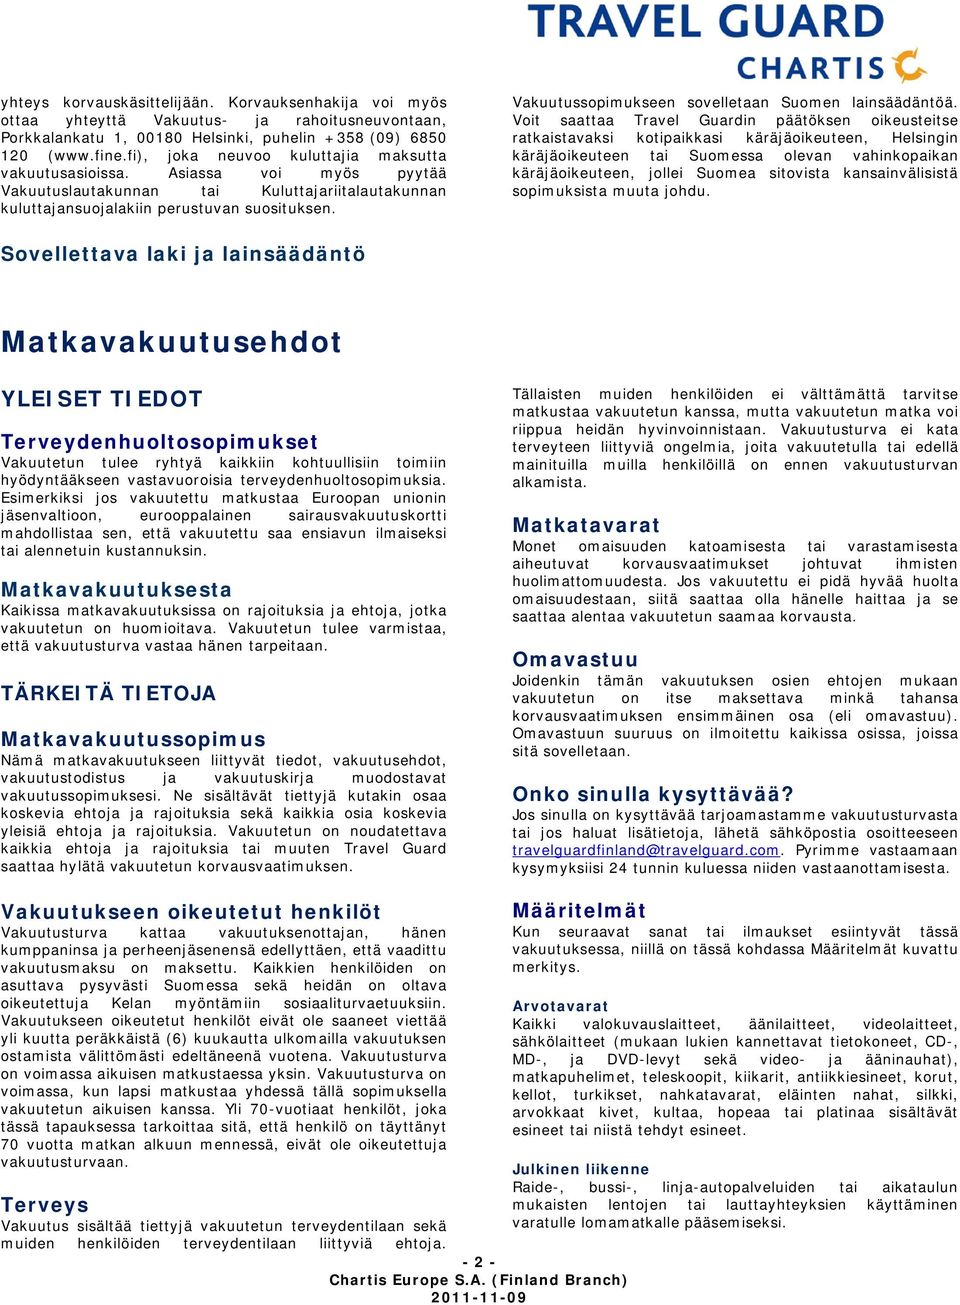 Vakuutussopimukseen sovelletaan Suomen lainsäädäntöä.